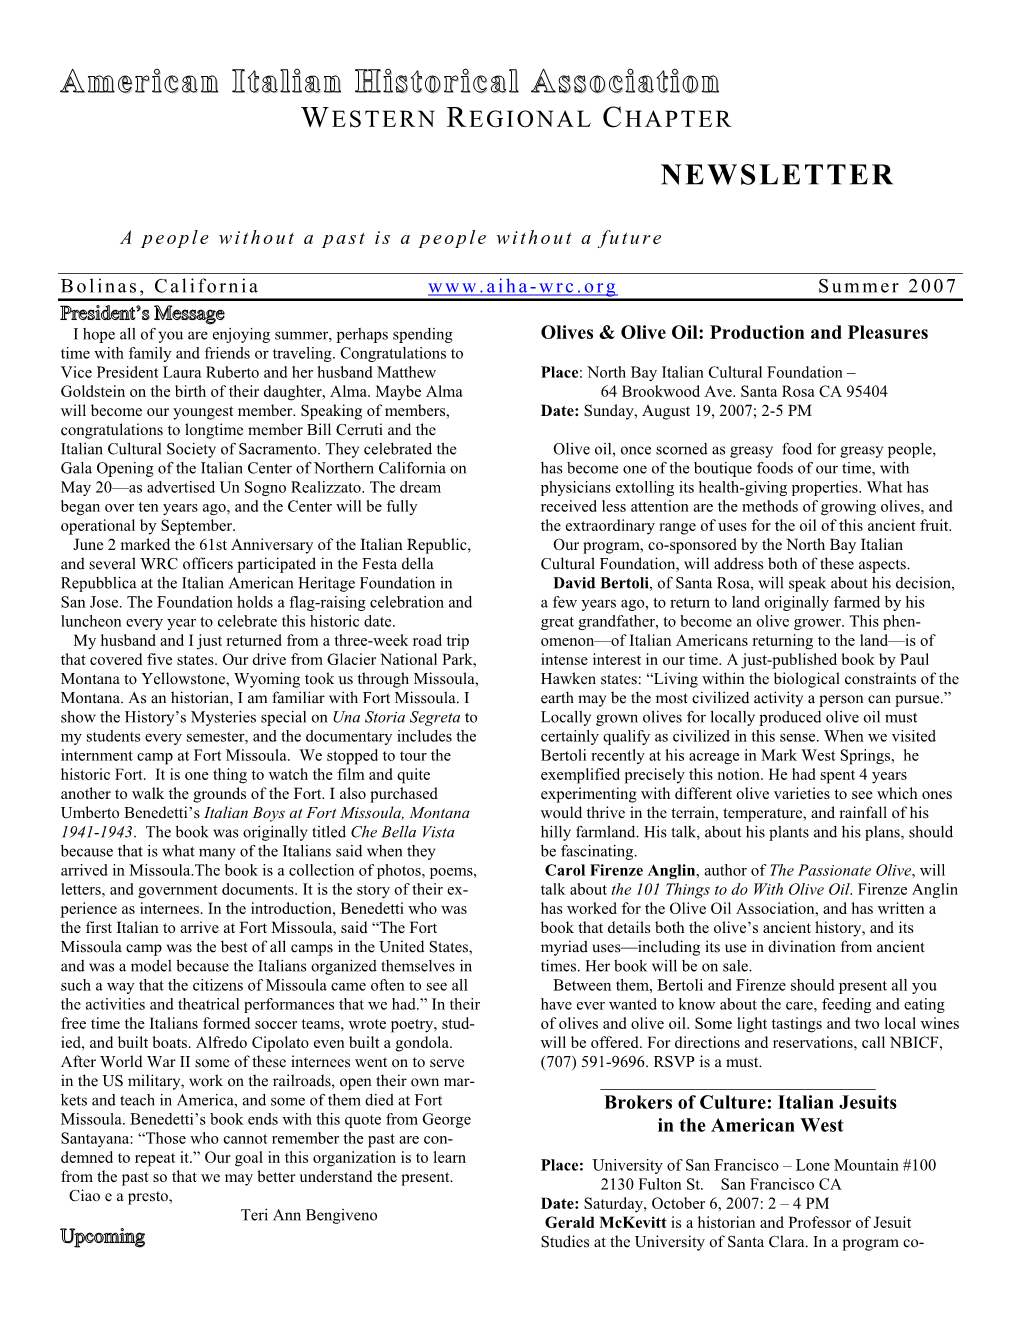 Summer 2007 Newsletter